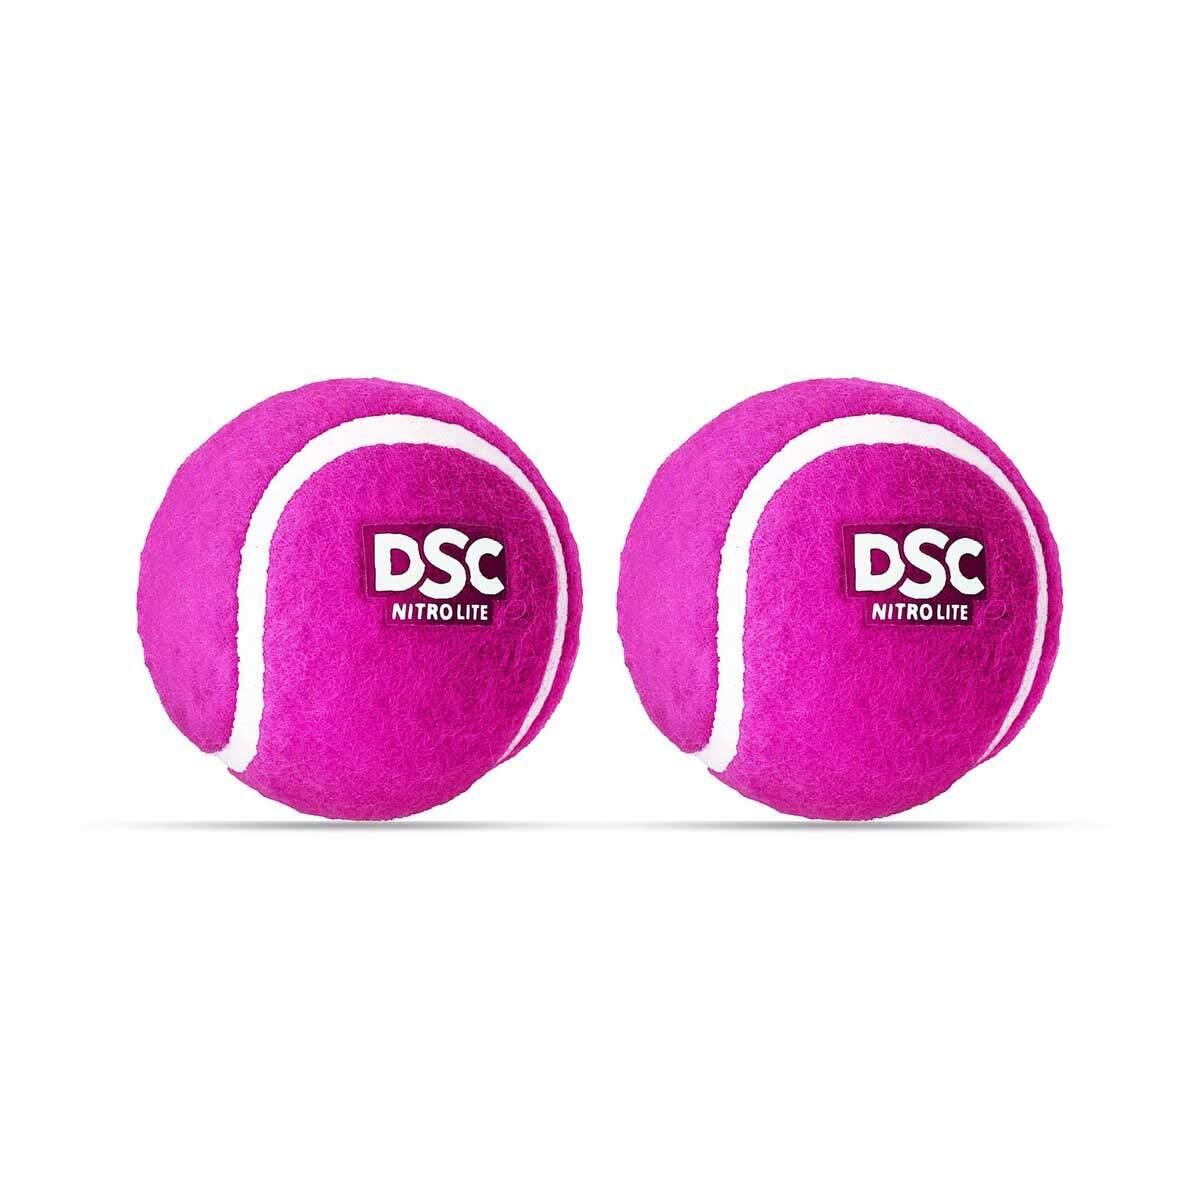 DSC DSC Nitro Light Rubber Tennis Ball- Pack of 2